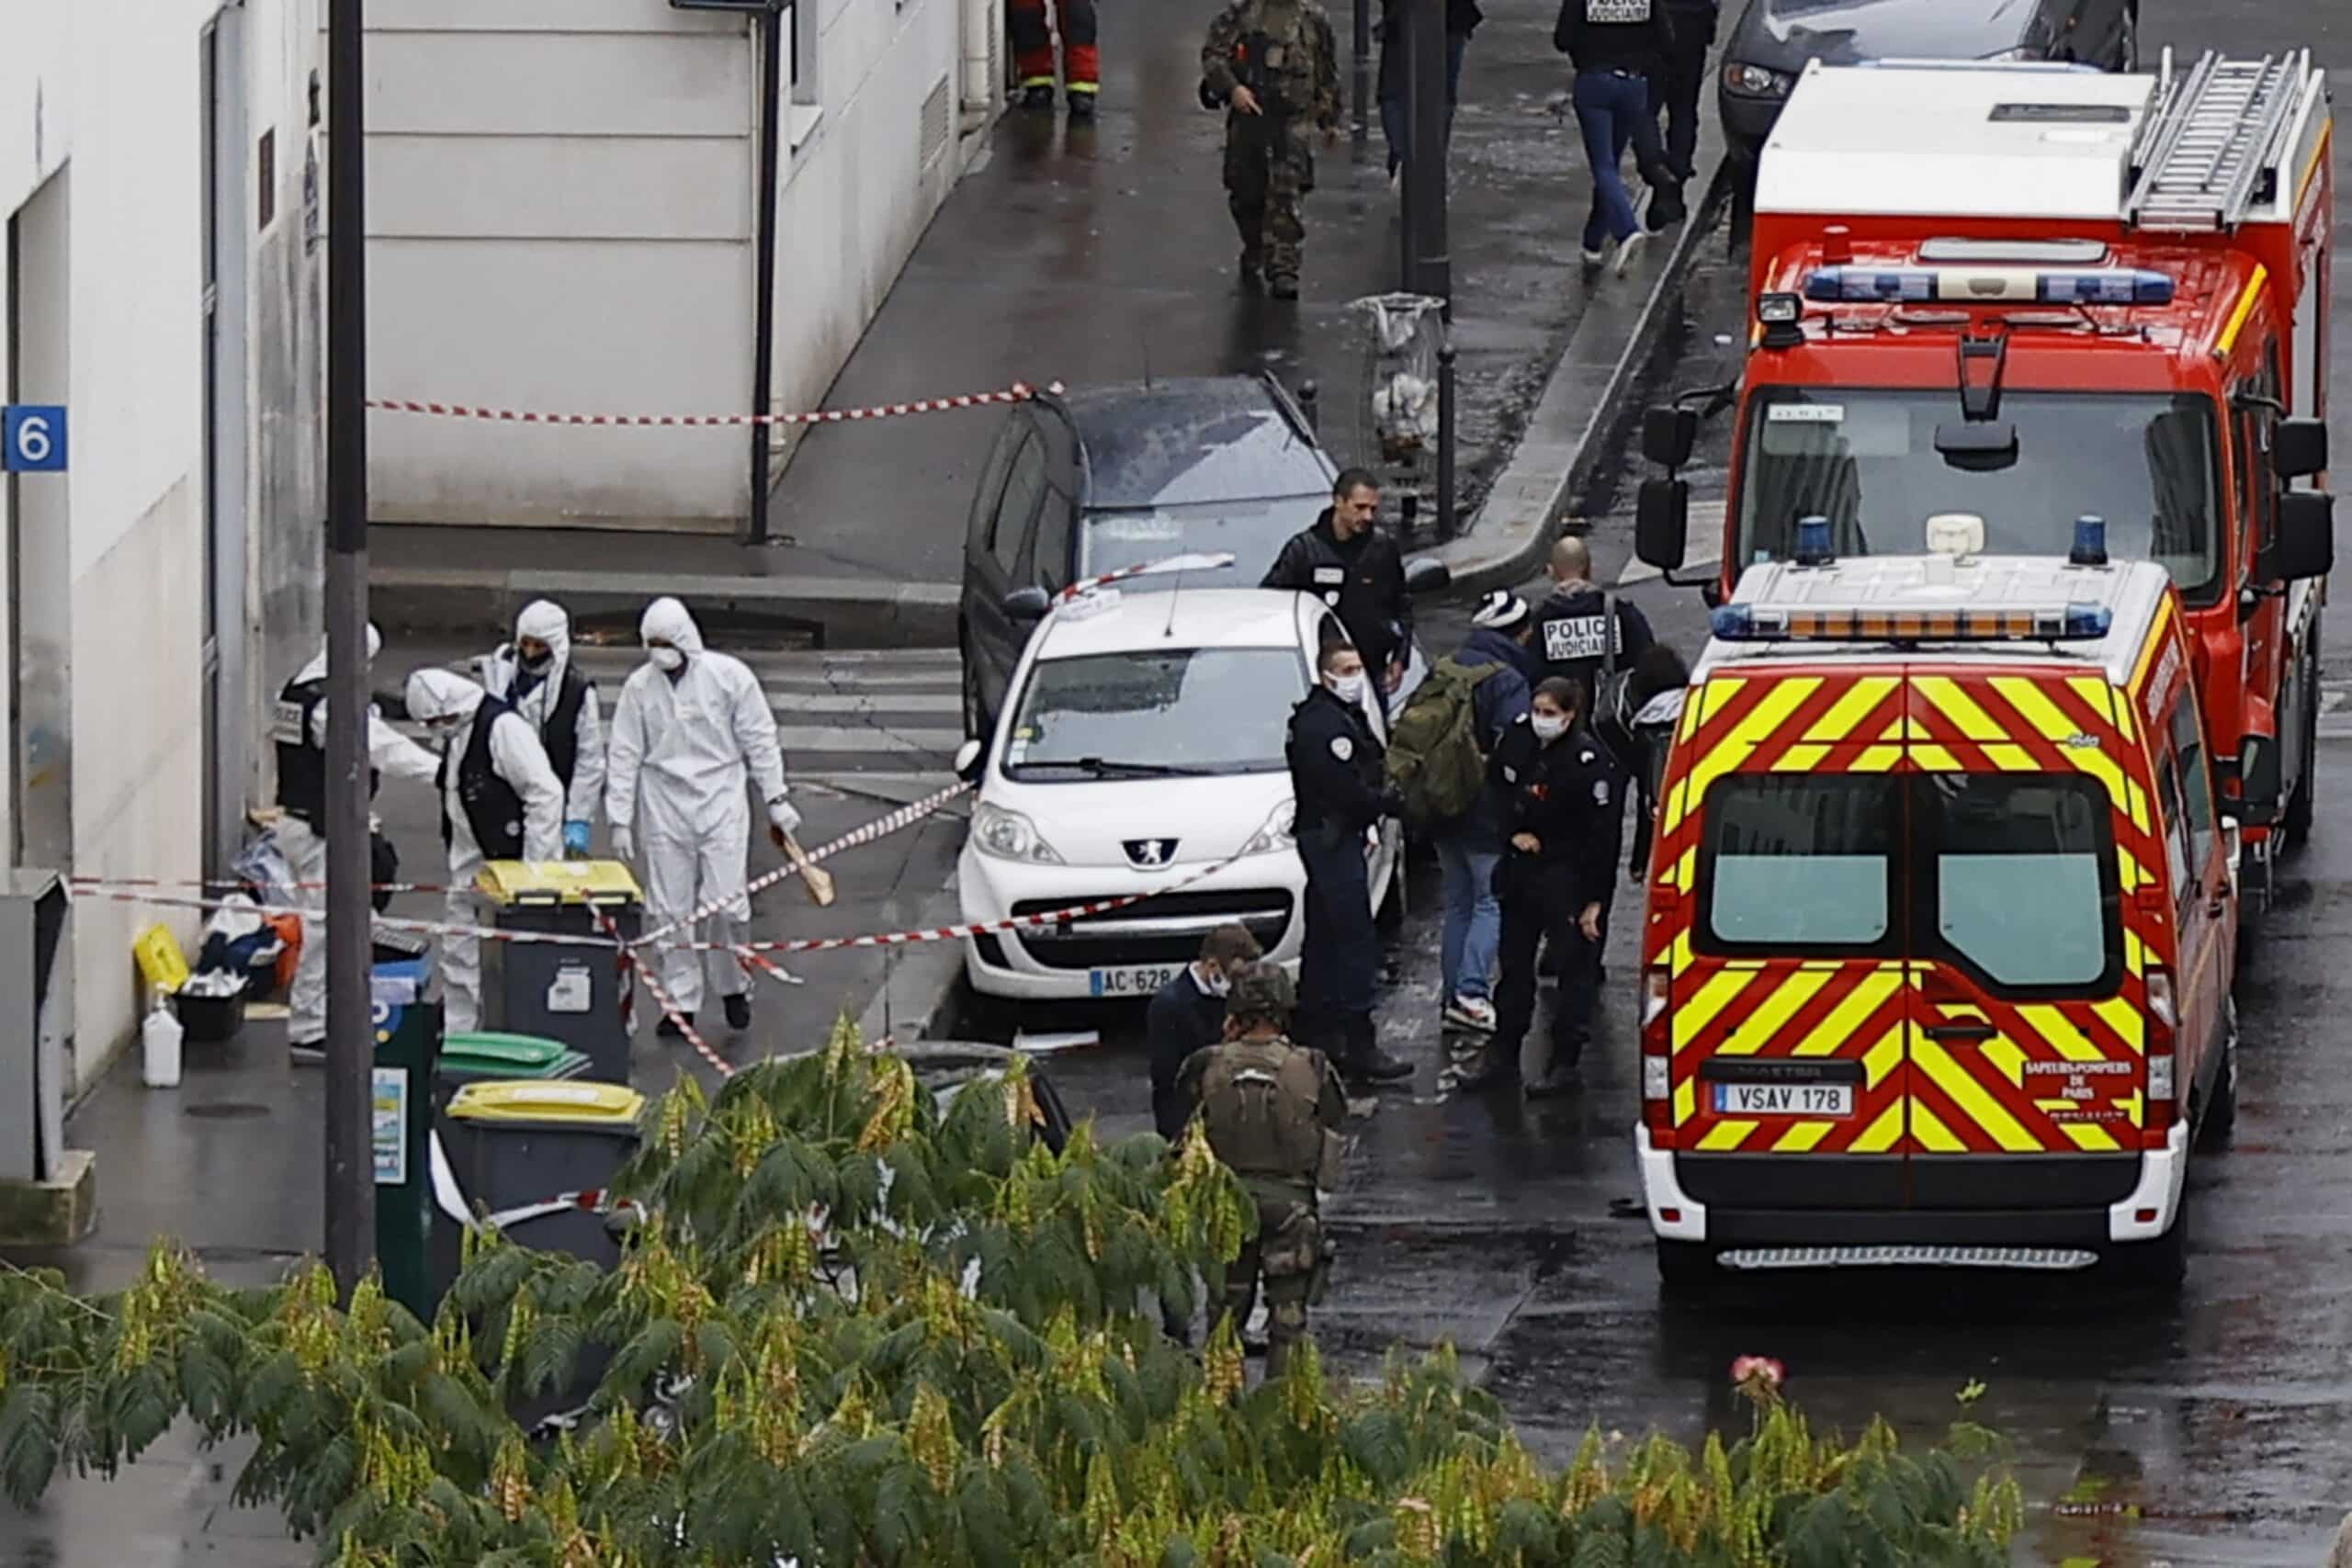 Pretnje Danasu da će “završiti kao Šarli ebdo”, francuski satirični list: Šta se desilo 7. januara 2015. kada je ubijeno 12 ljudi? 3